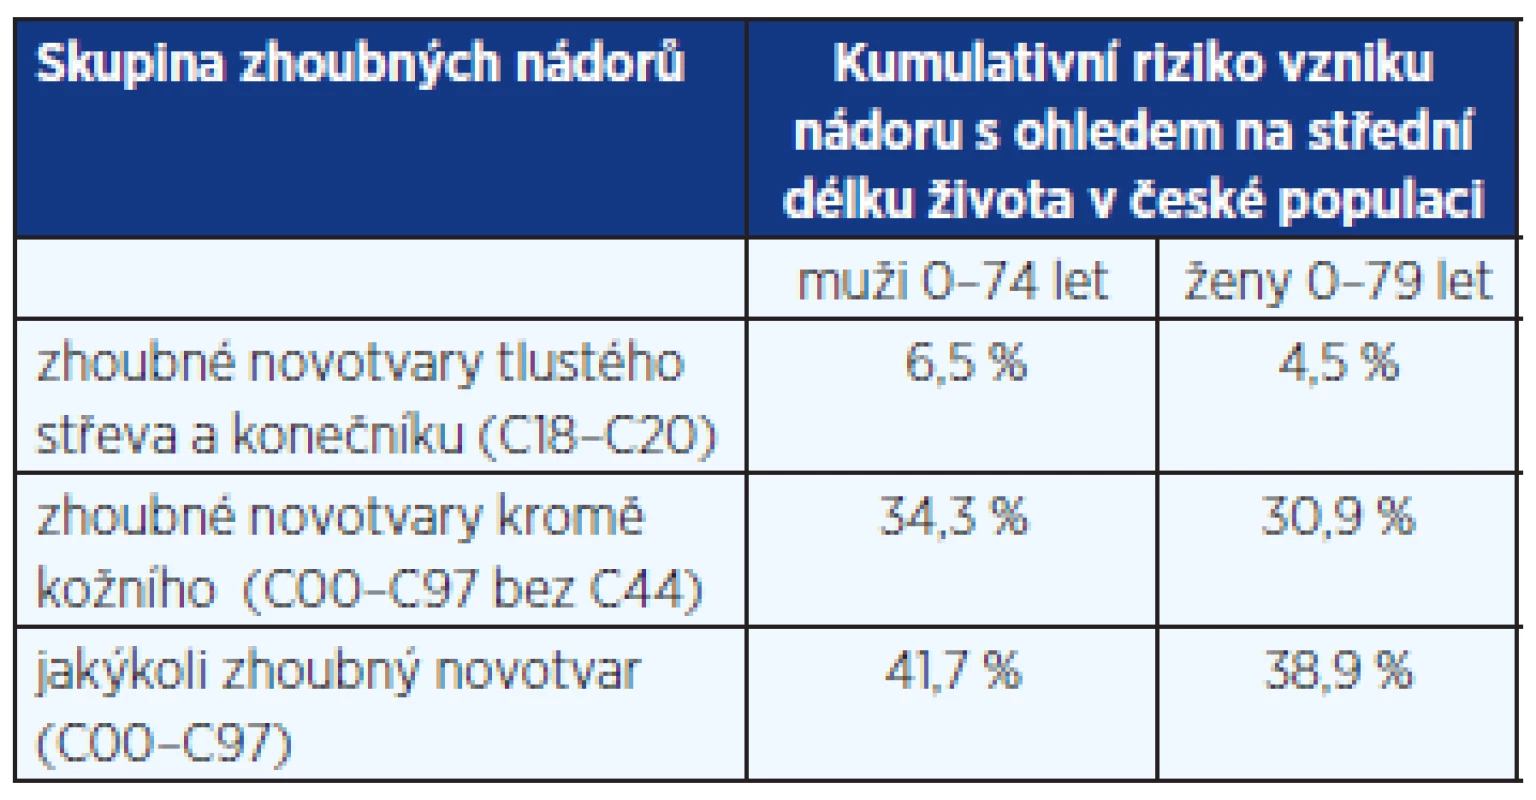 Kumulativní riziko vzniku nádorového onemocnění v české populaci v období 2006–2010